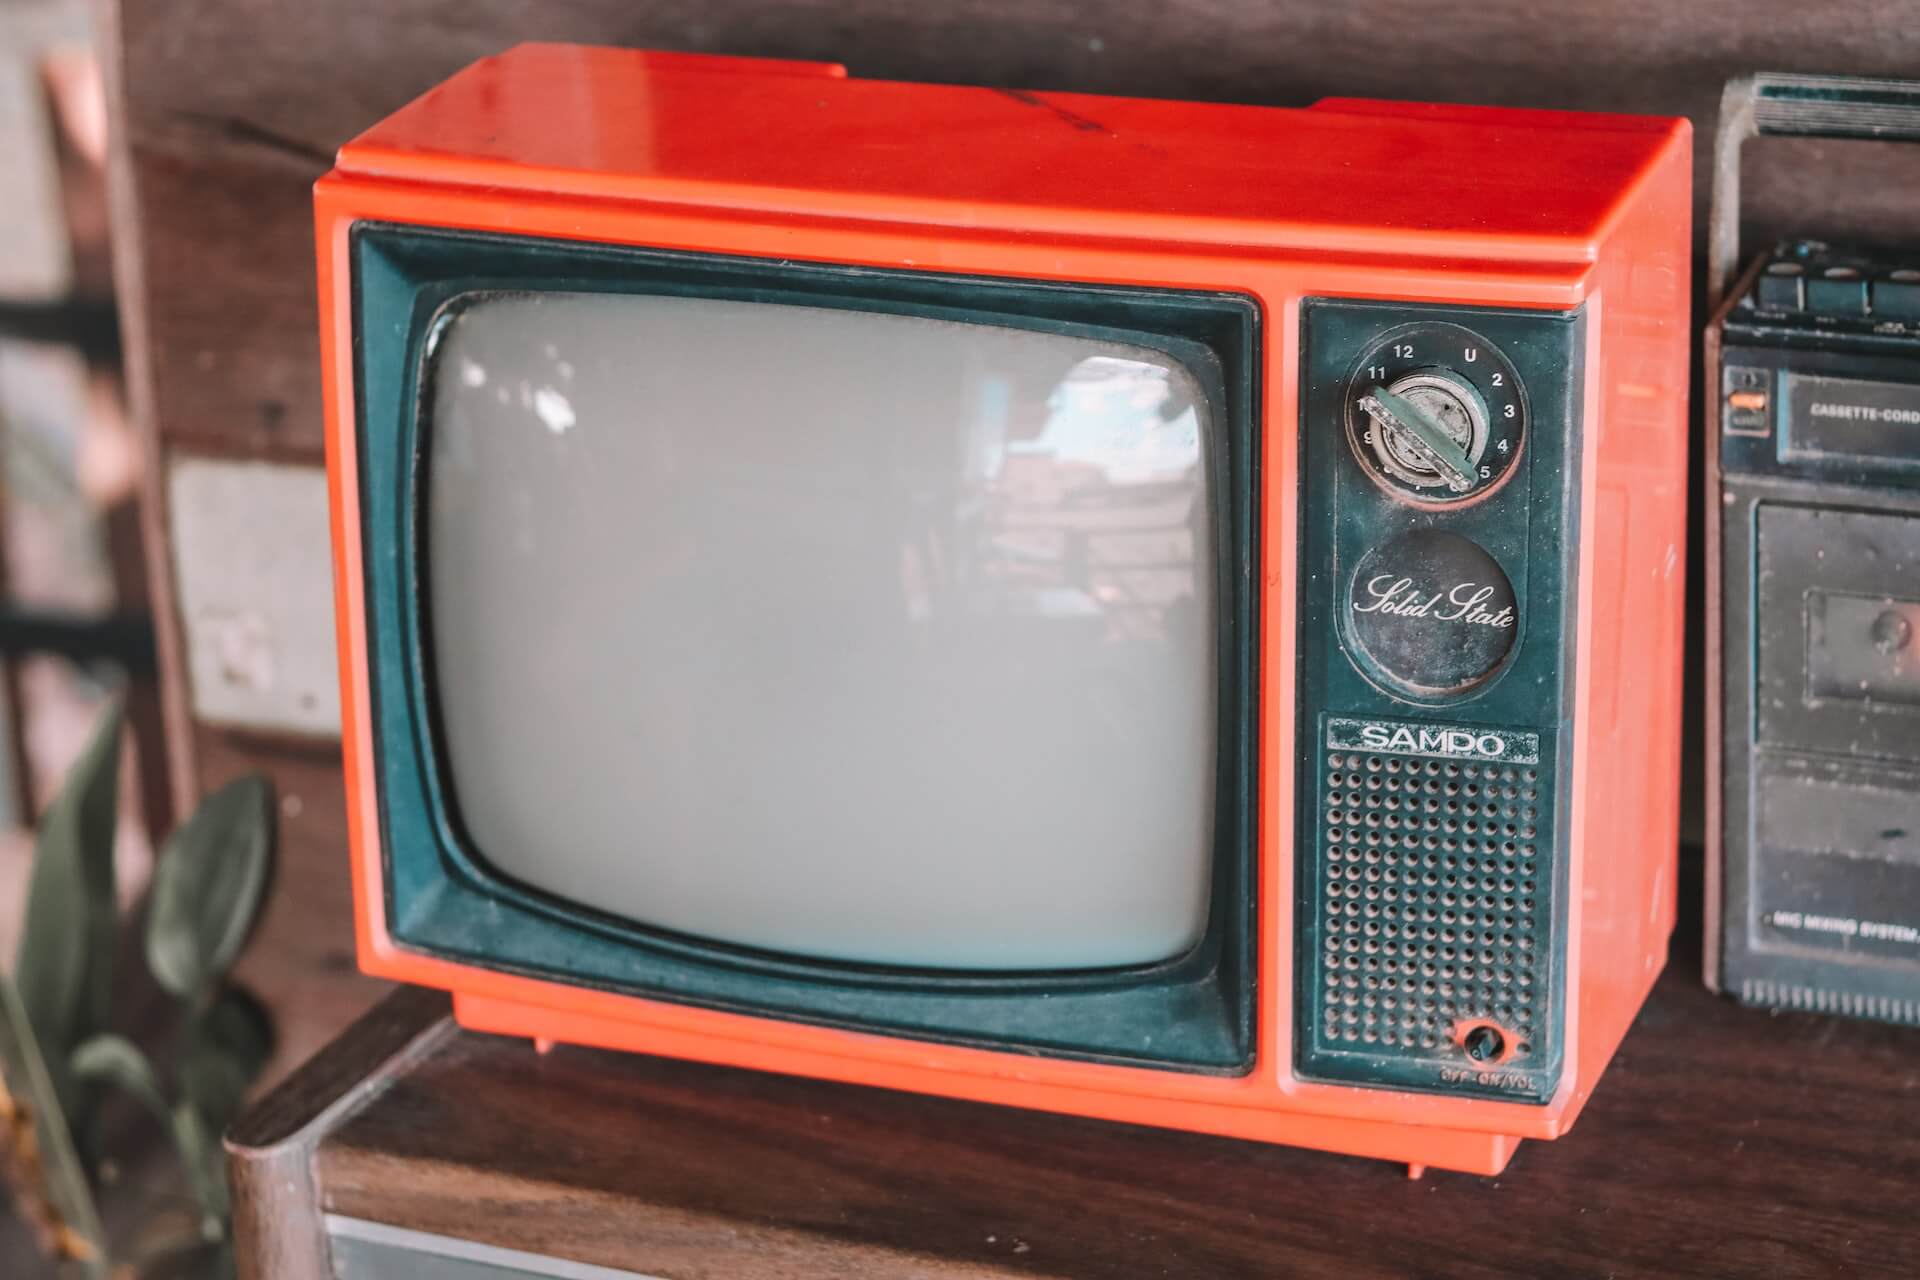 Vintage red television set